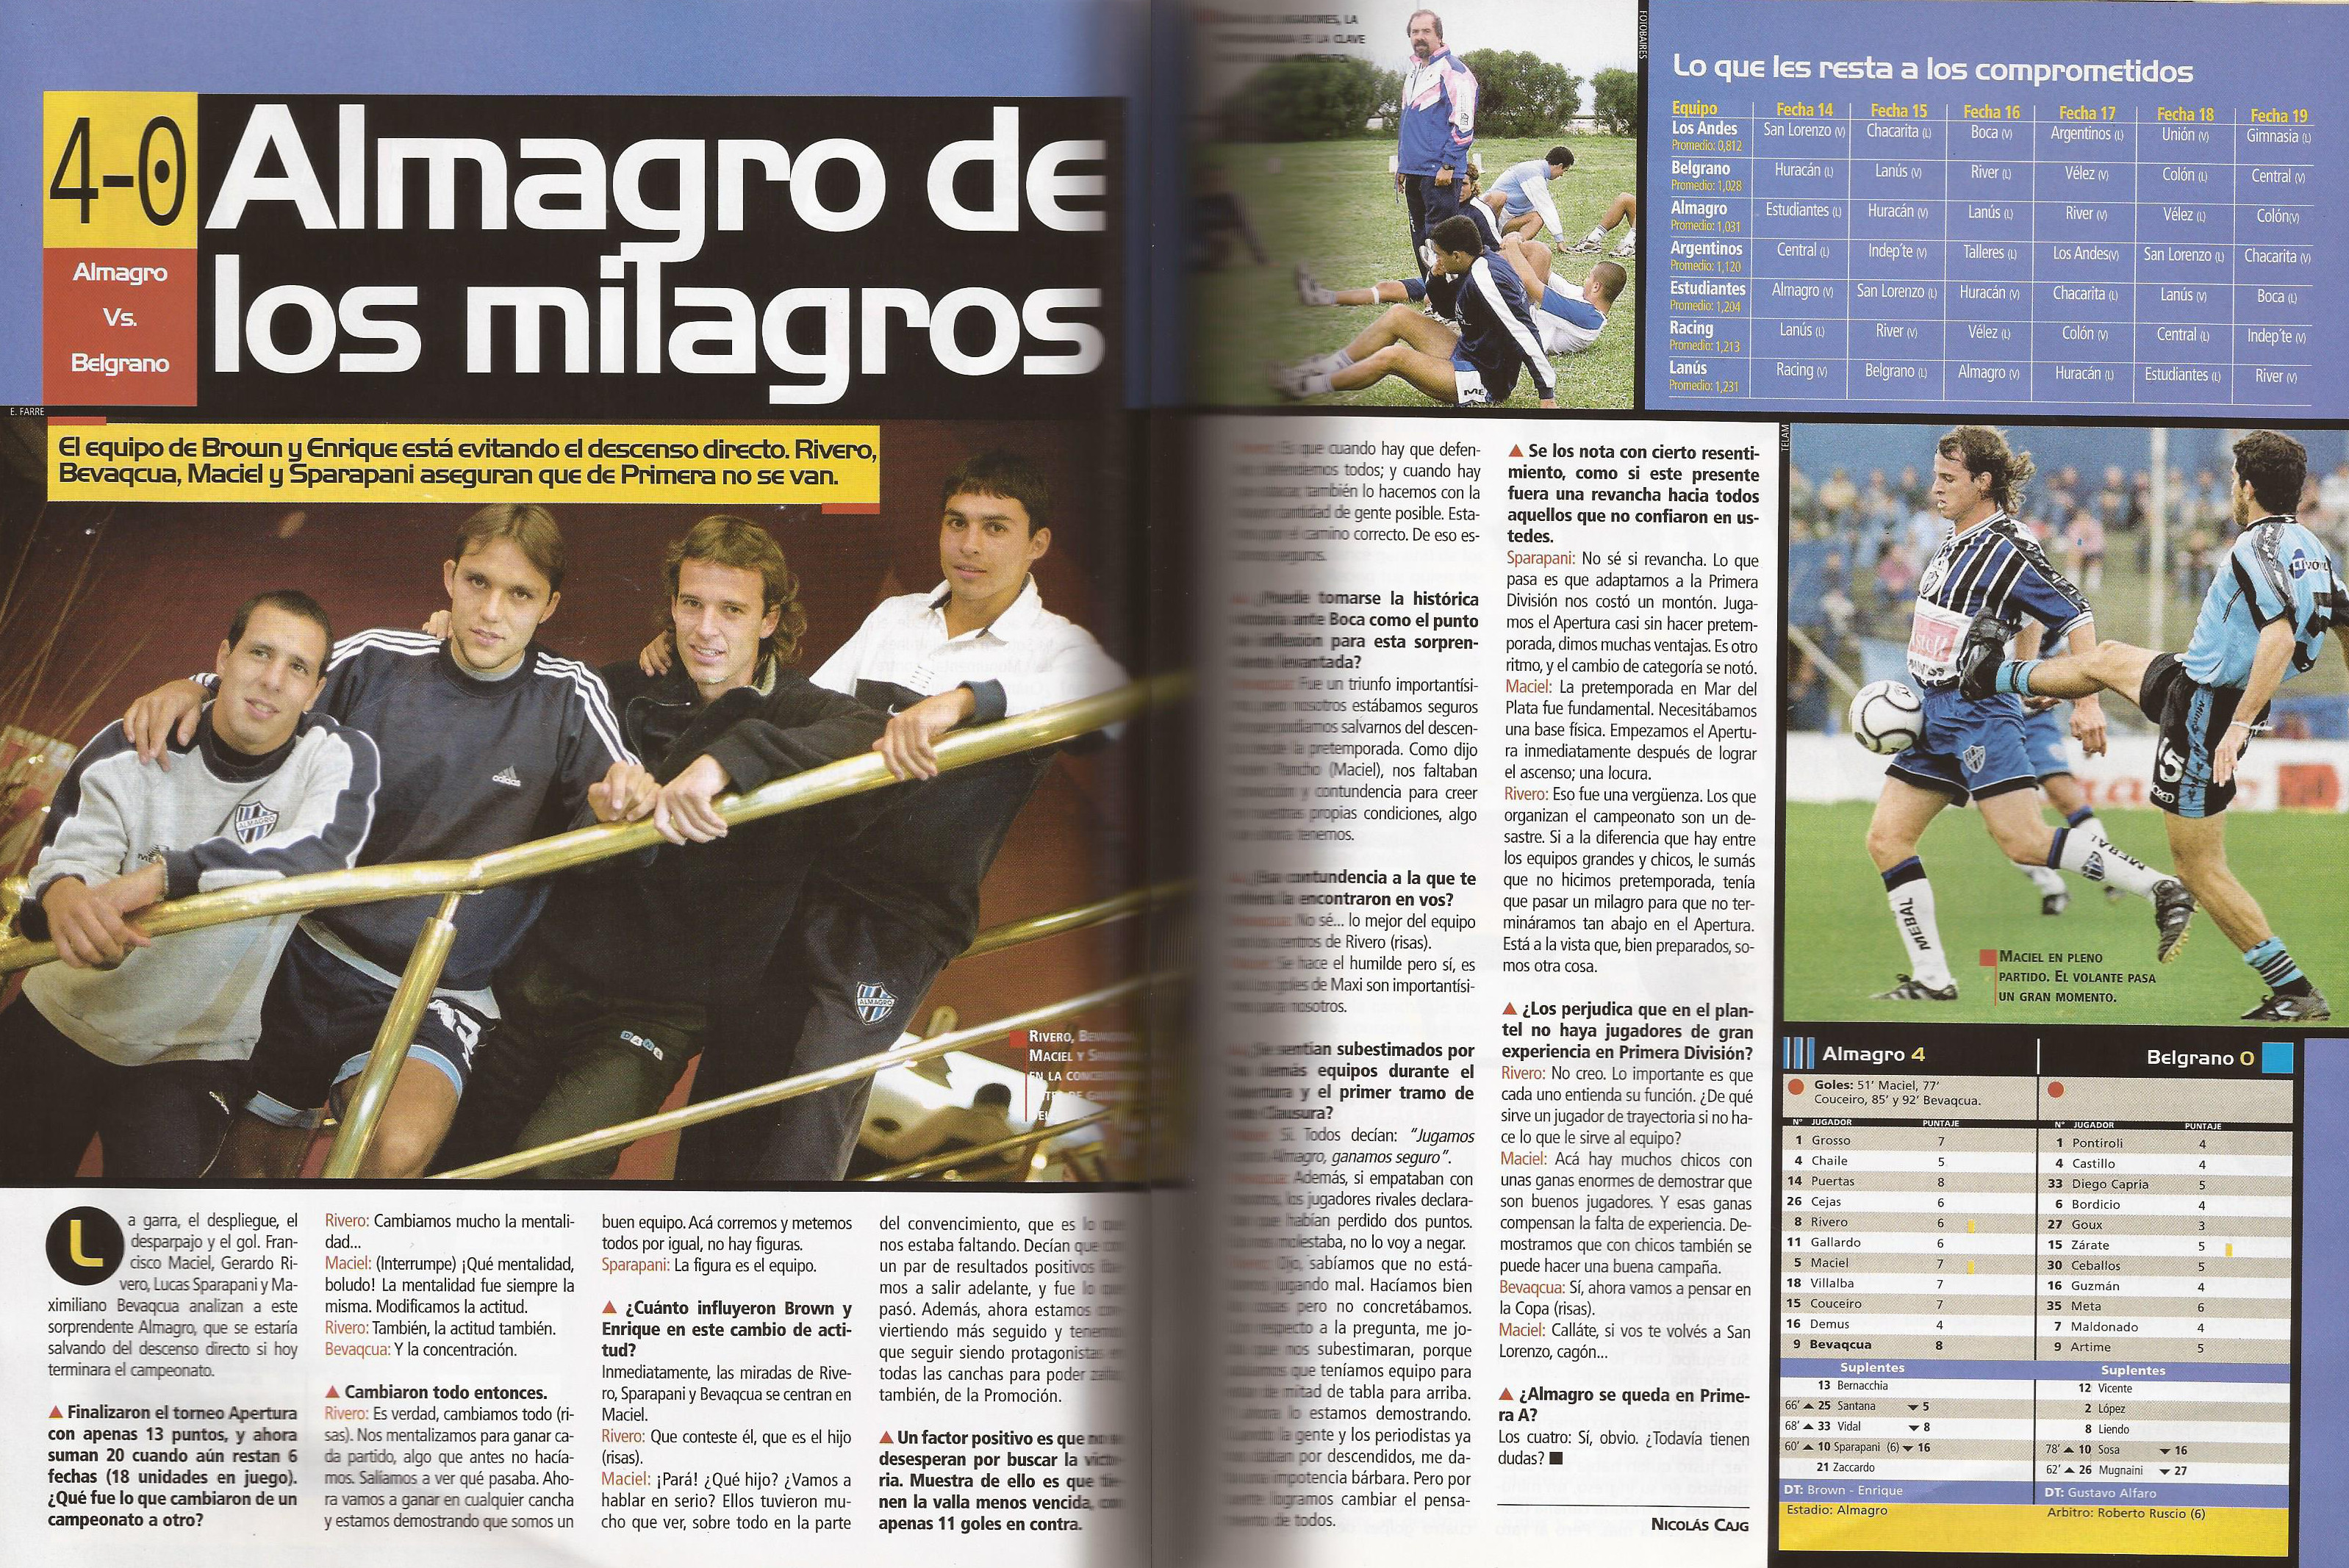 2000-01 Primera Division - Almagro vs Belgrano - Revista Pasion